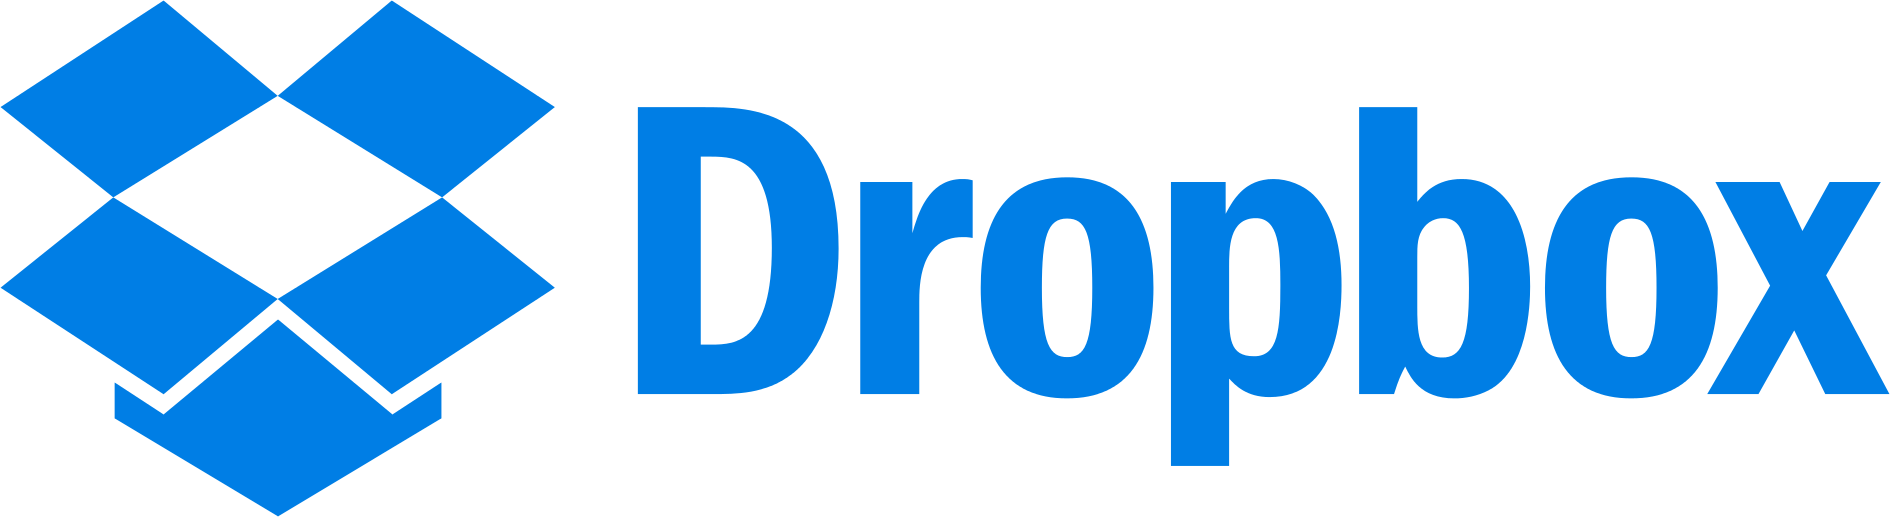 Dropbox_logoCROP.png